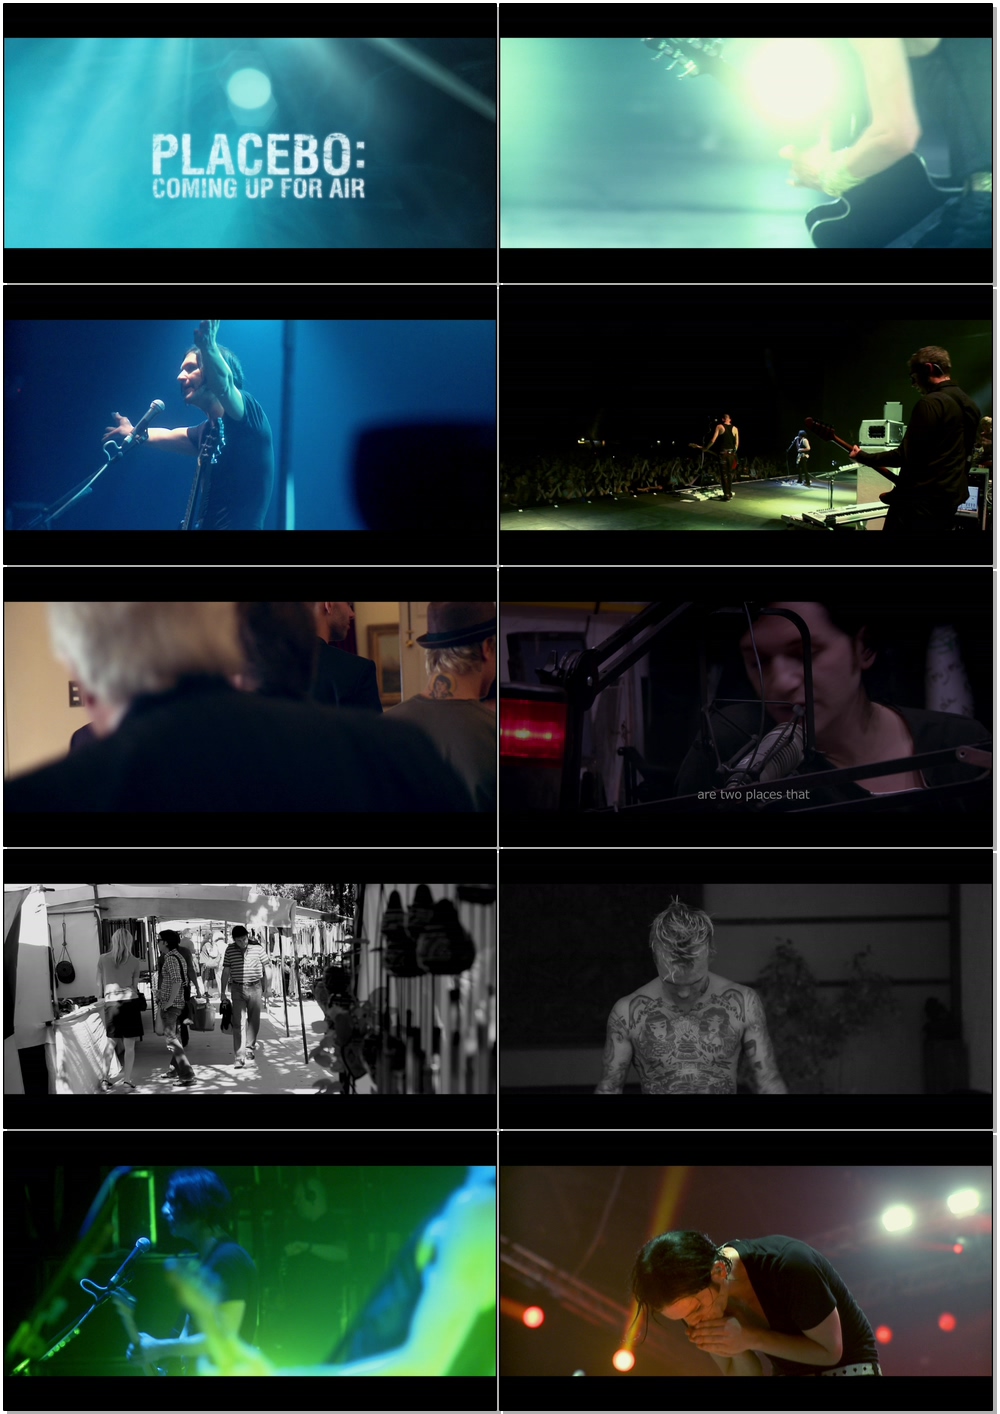 Placebo 安慰剂 – We Come In Pieces 演唱会 (2011) 1080P蓝光原盘 [BDMV 38.3G]Blu-ray、Blu-ray、摇滚演唱会、欧美演唱会、蓝光演唱会10